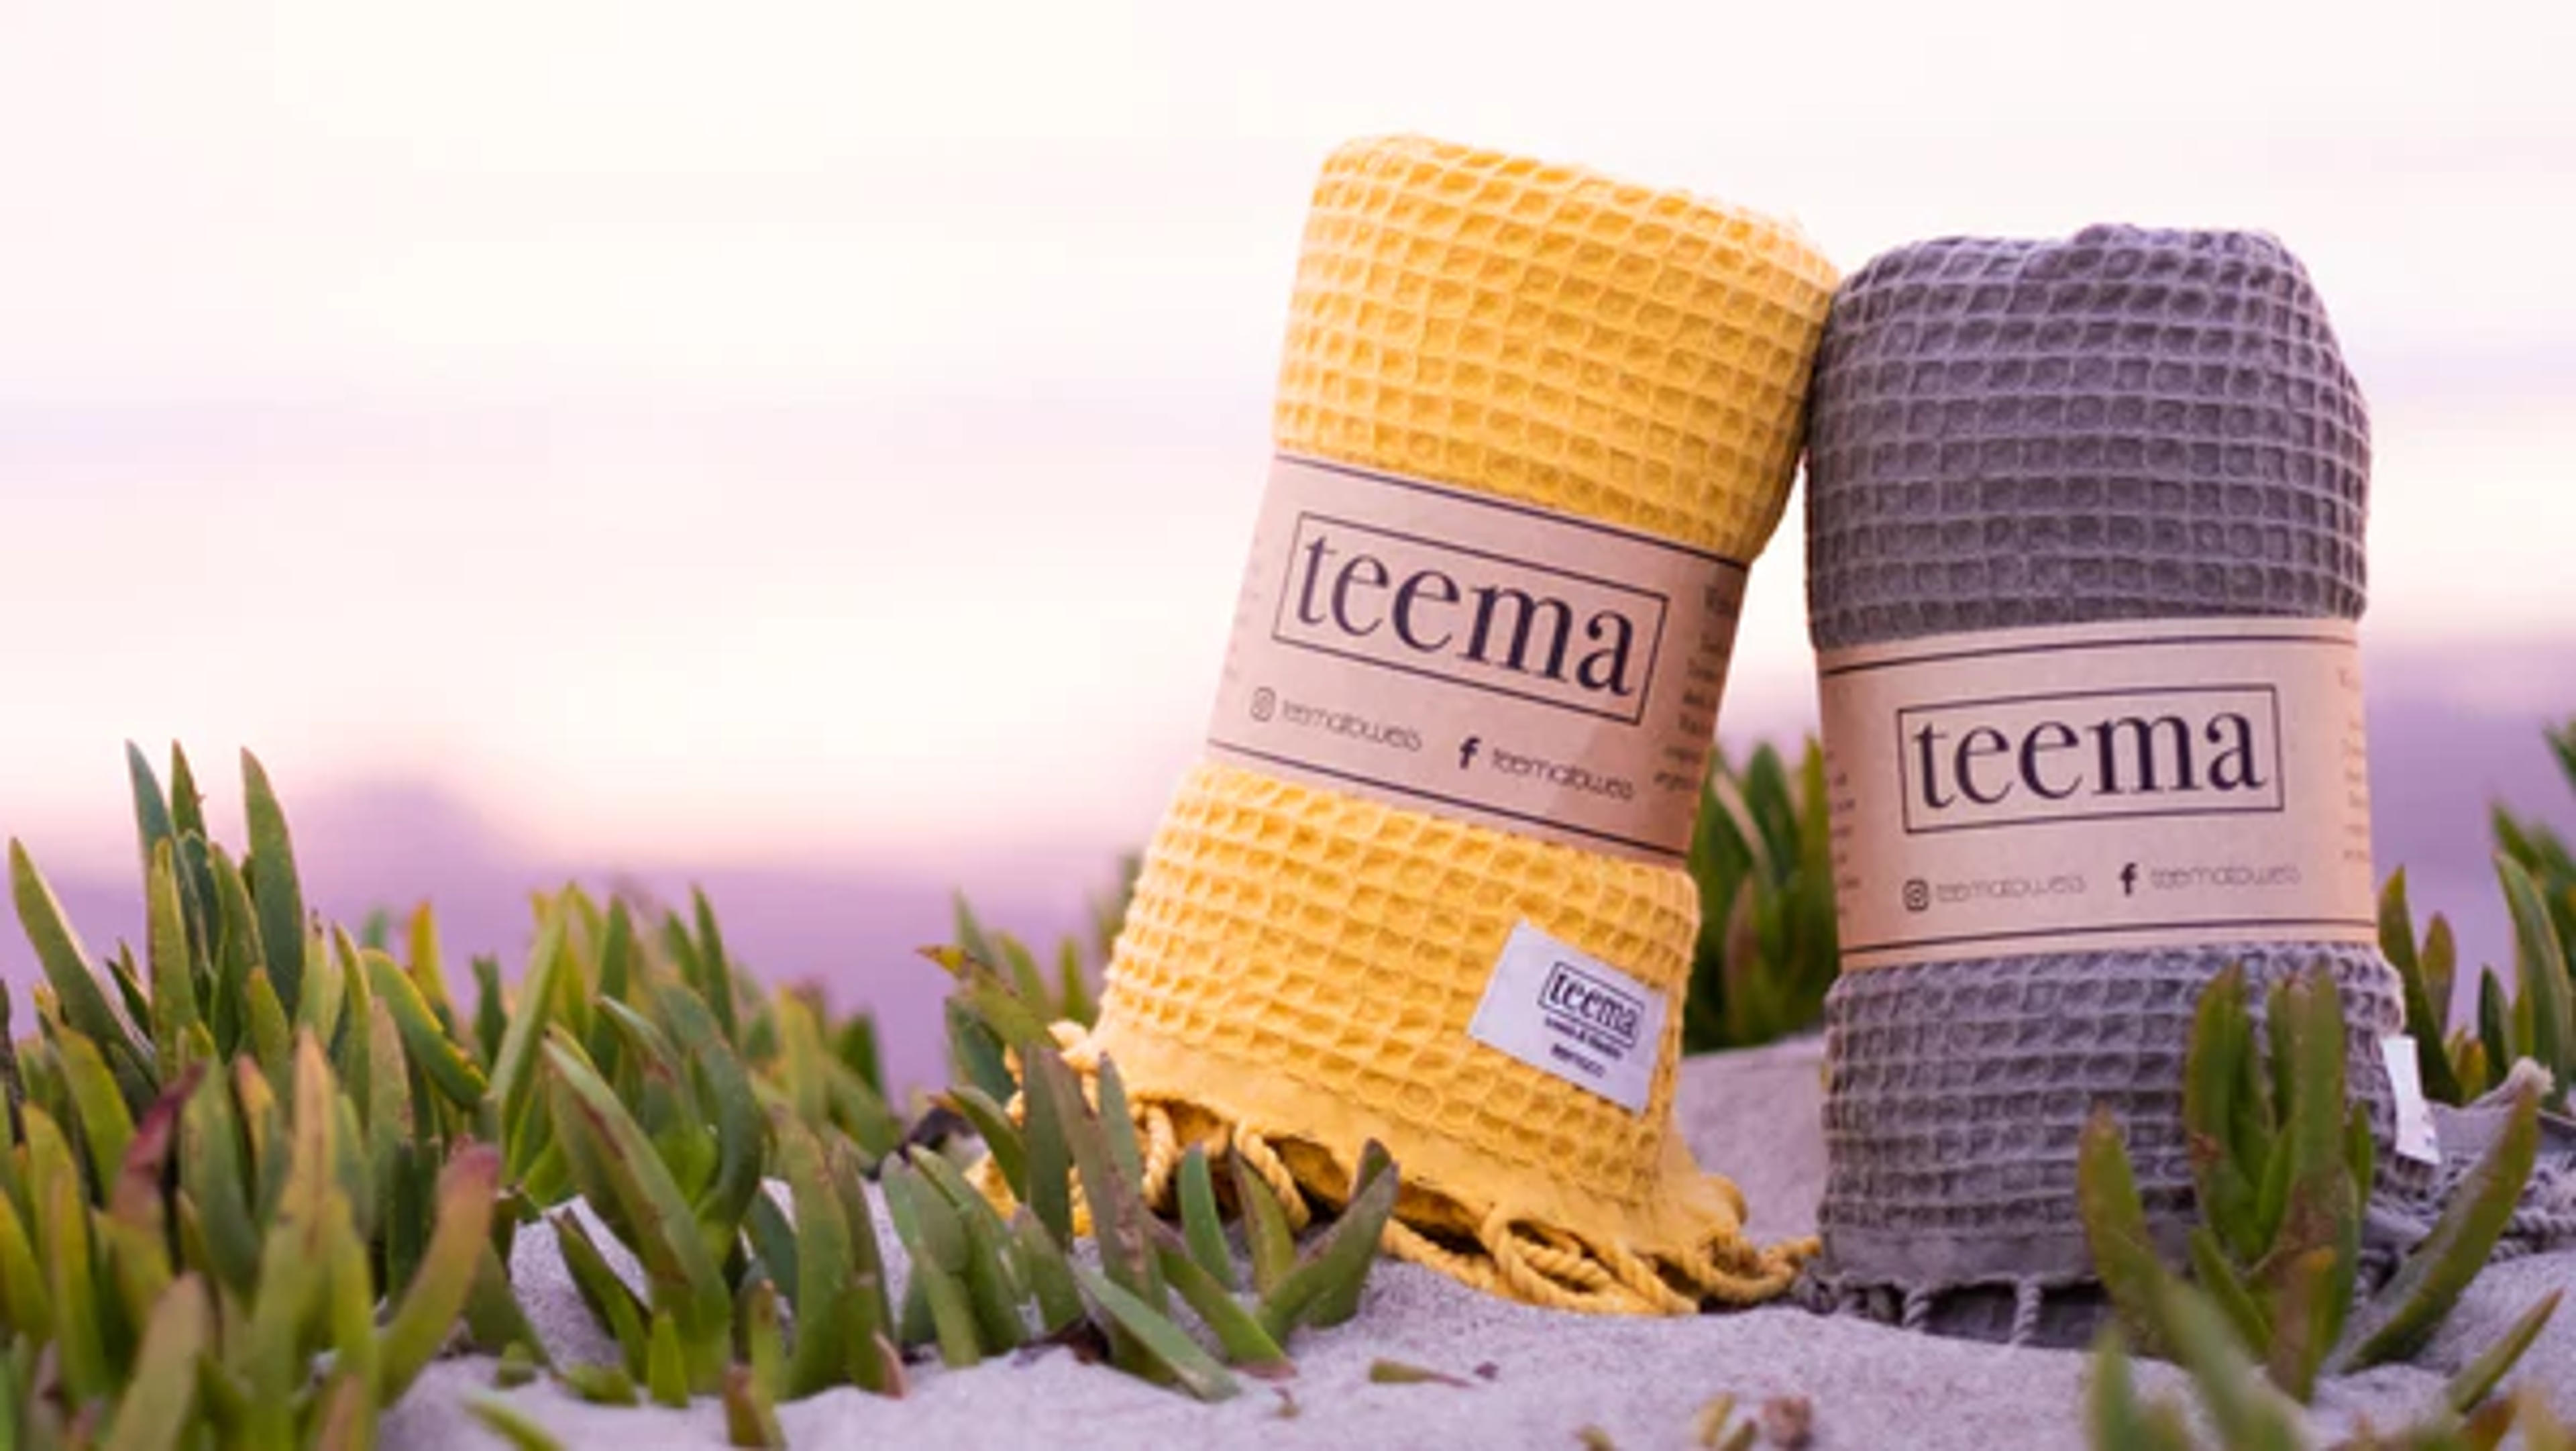 Teema™ - Towels & Blankets